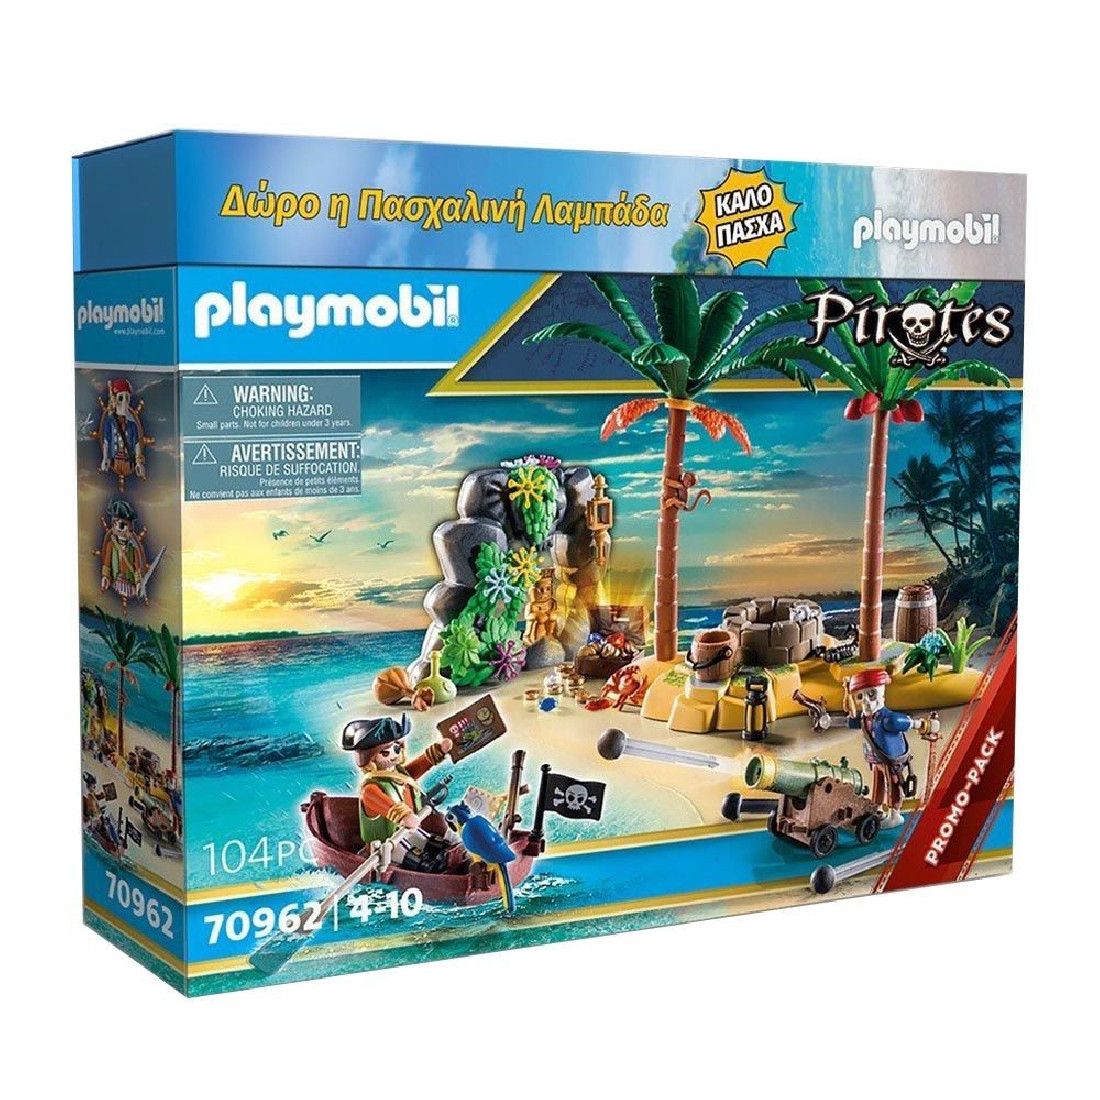 Λαμπάδα Πειρατικό νησί θησαυρού 70962 Playmobil